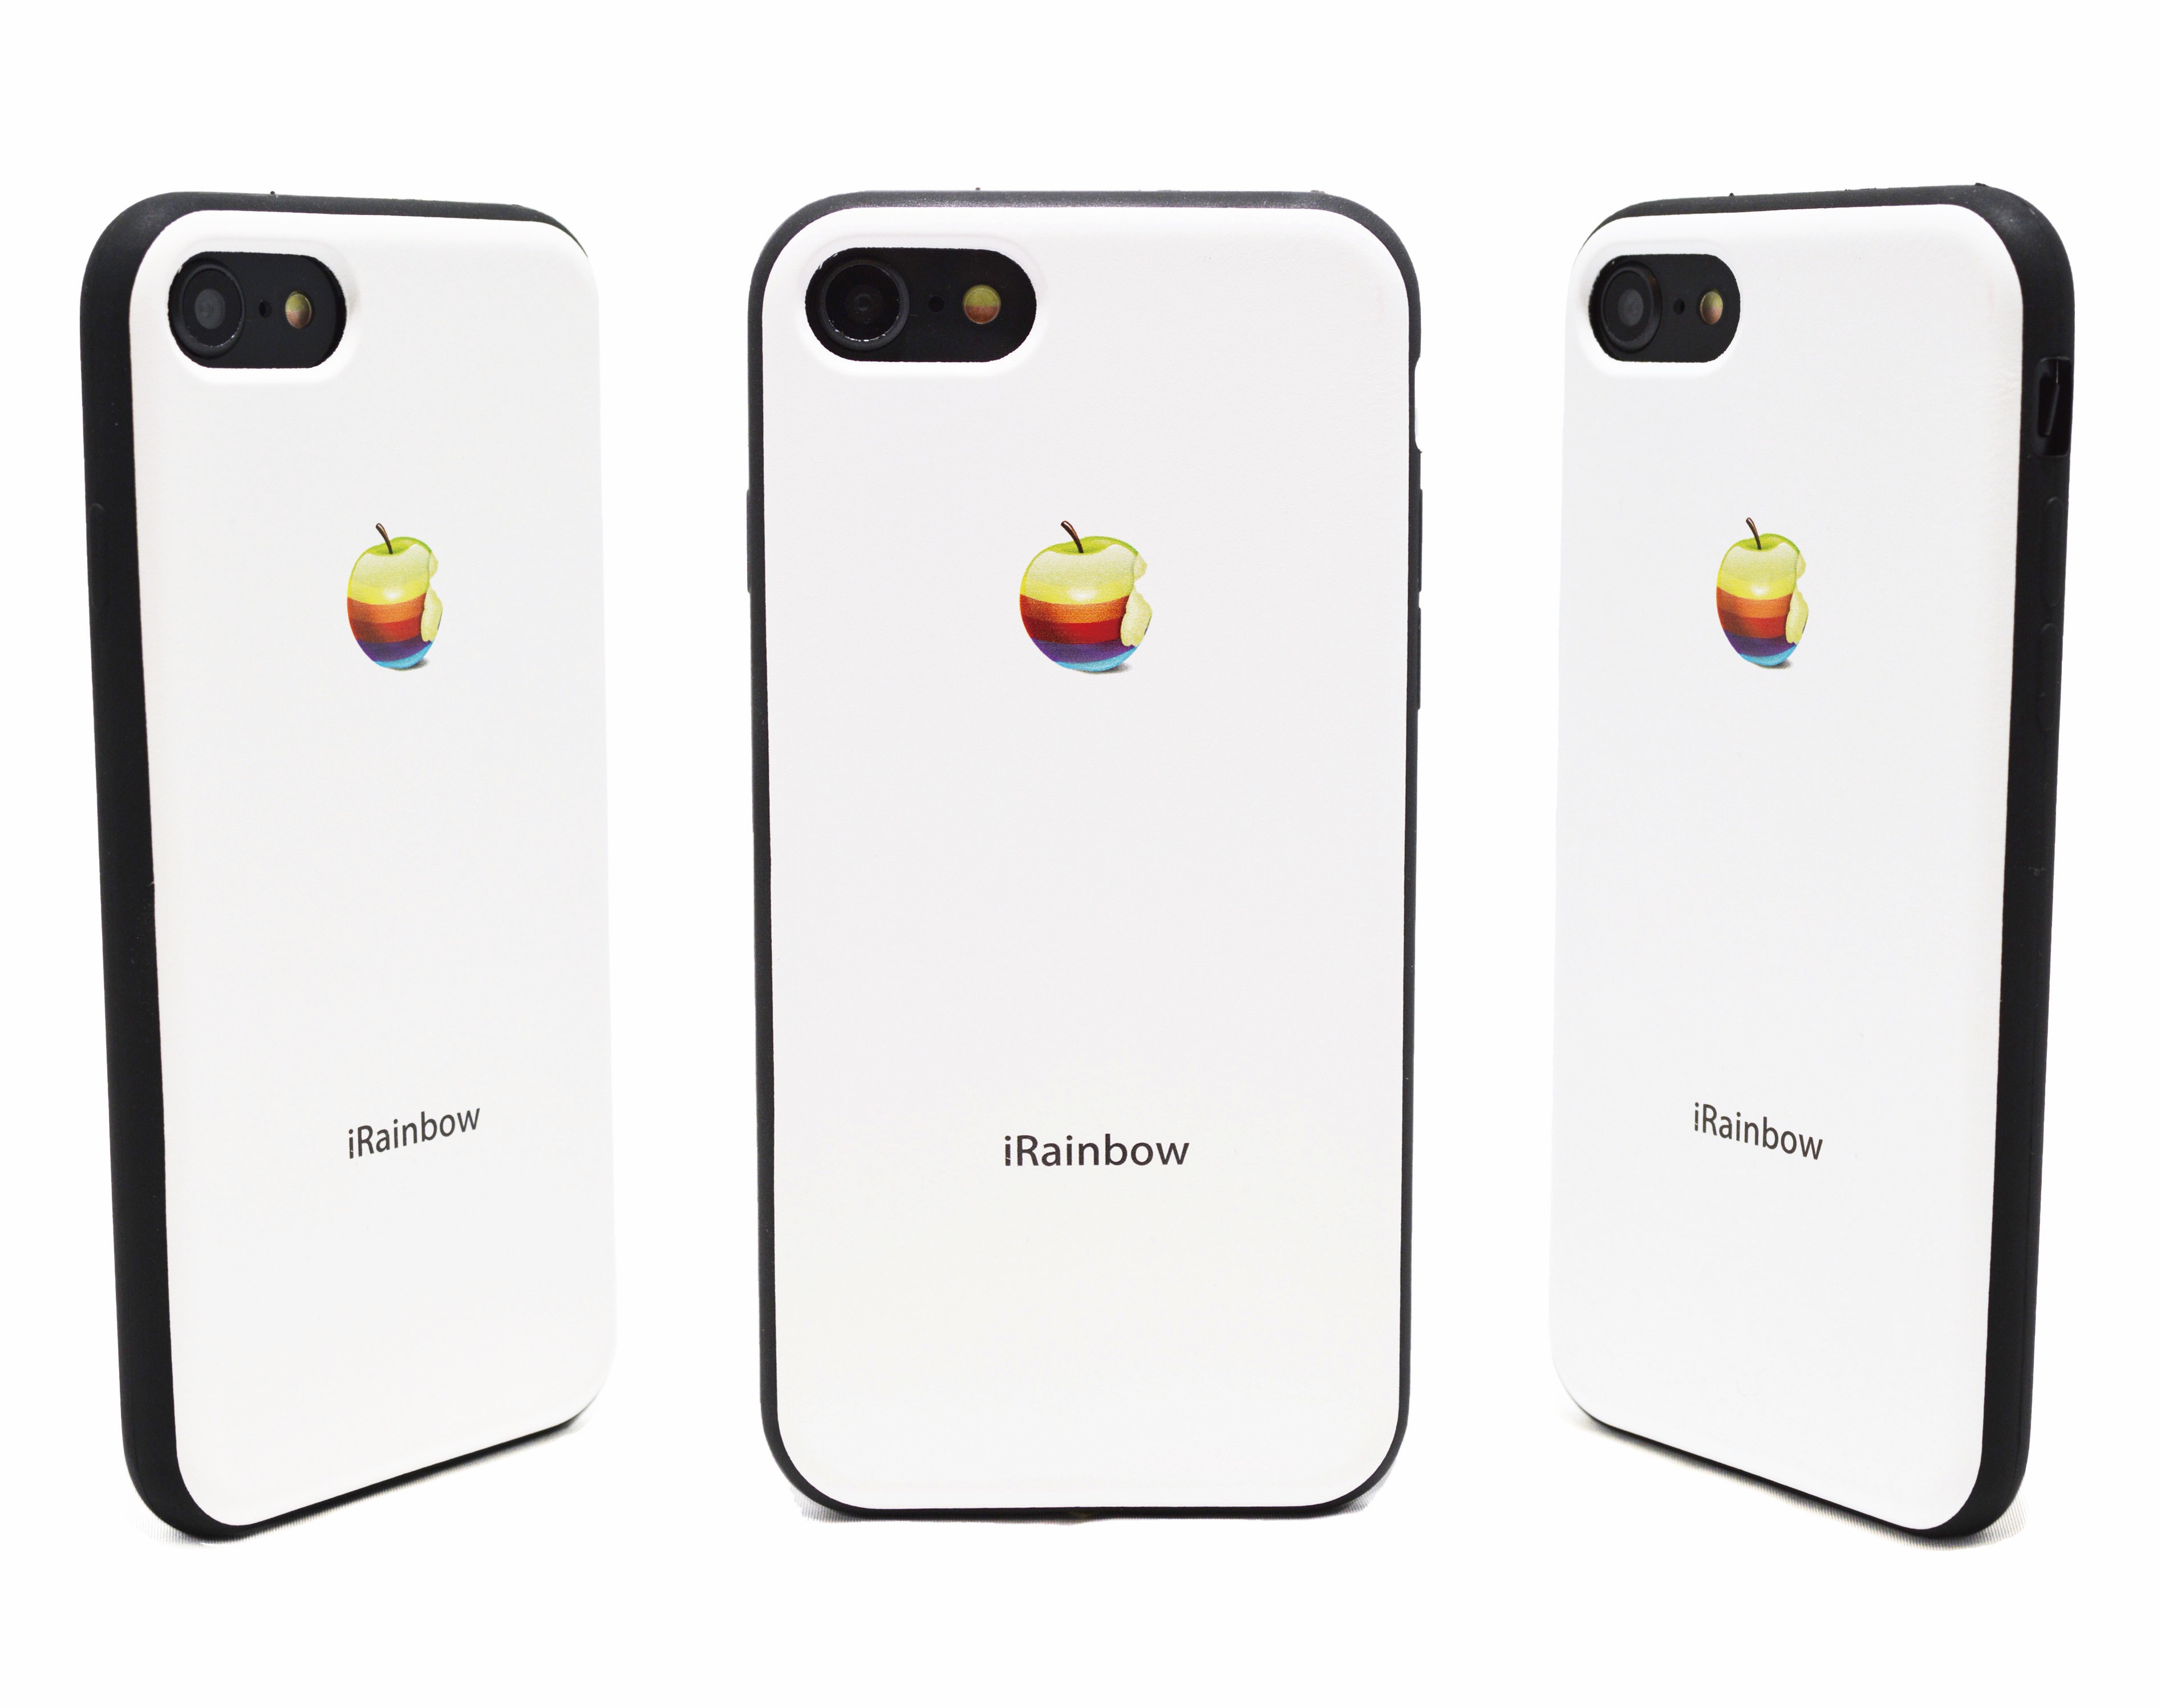 3d Rainbow Apple リアルな虹りんご Iphone7 8用 4 7インチ レザーケース オフホワイト Iichi ハンドメイド クラフト作品 手仕事品の通販